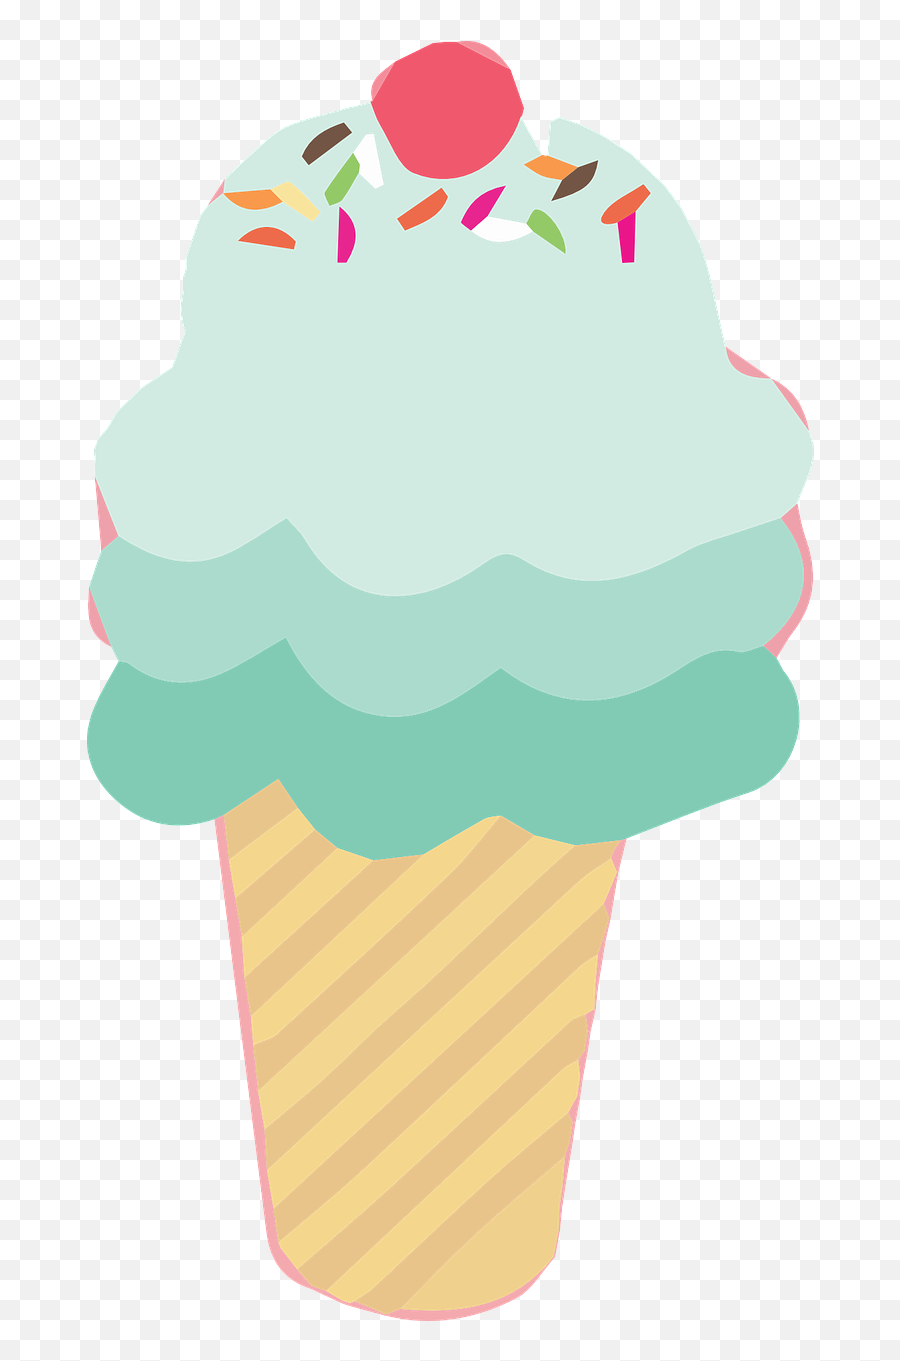 Ice Cream Cones Clipart Commercial Use - Ice Cream Cone Clip Art Transparent Background Ice Cream Cone Emoji,Ice Cream Cone Clipart